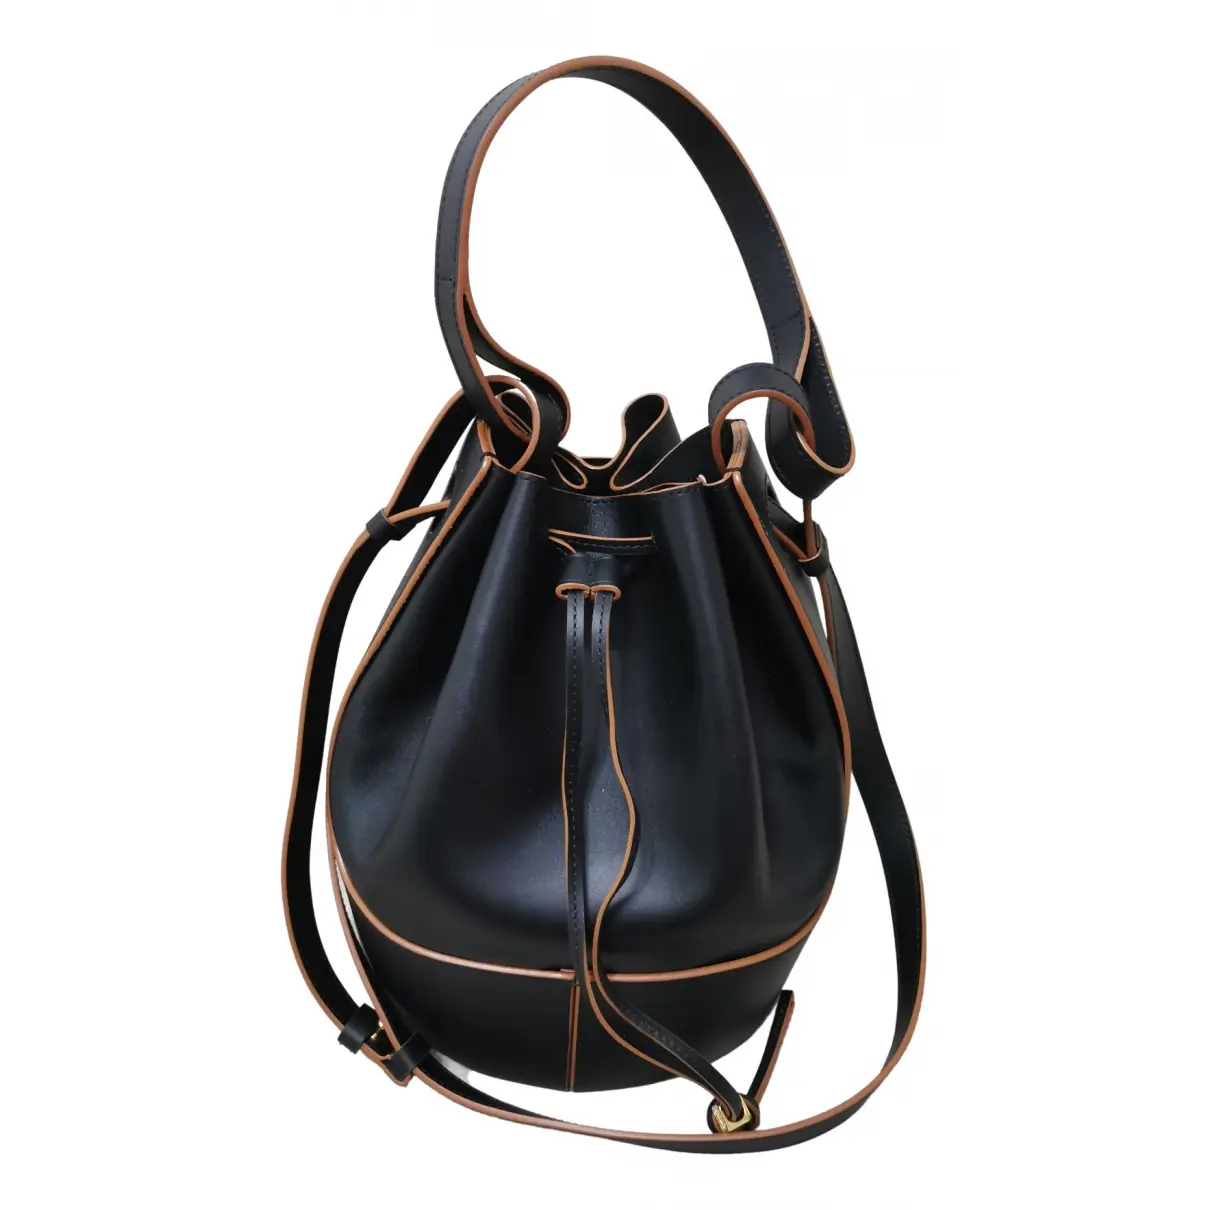 Balloon leather handbag Loewe